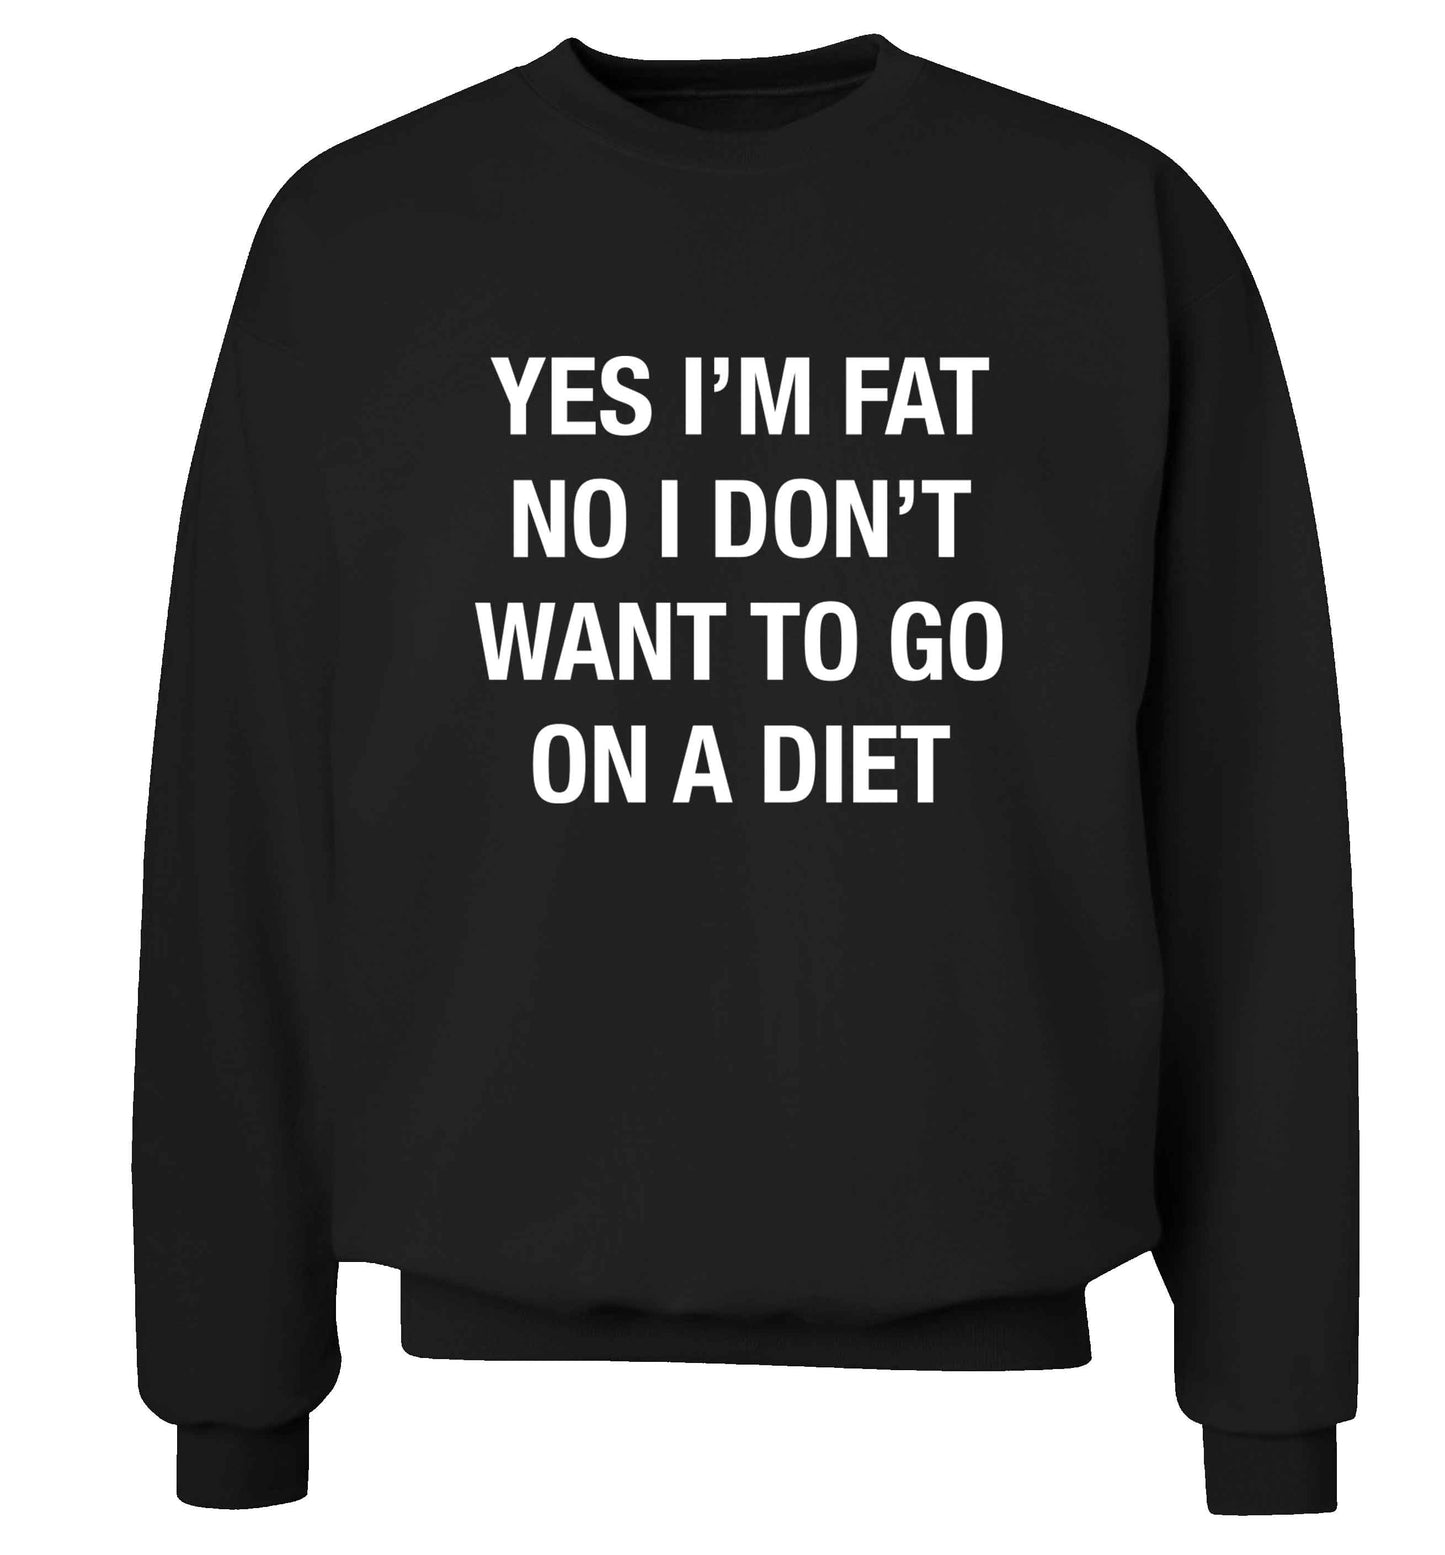 Yes I'm fat, no I don't want to go on a diet adult's unisex black sweater 2XL